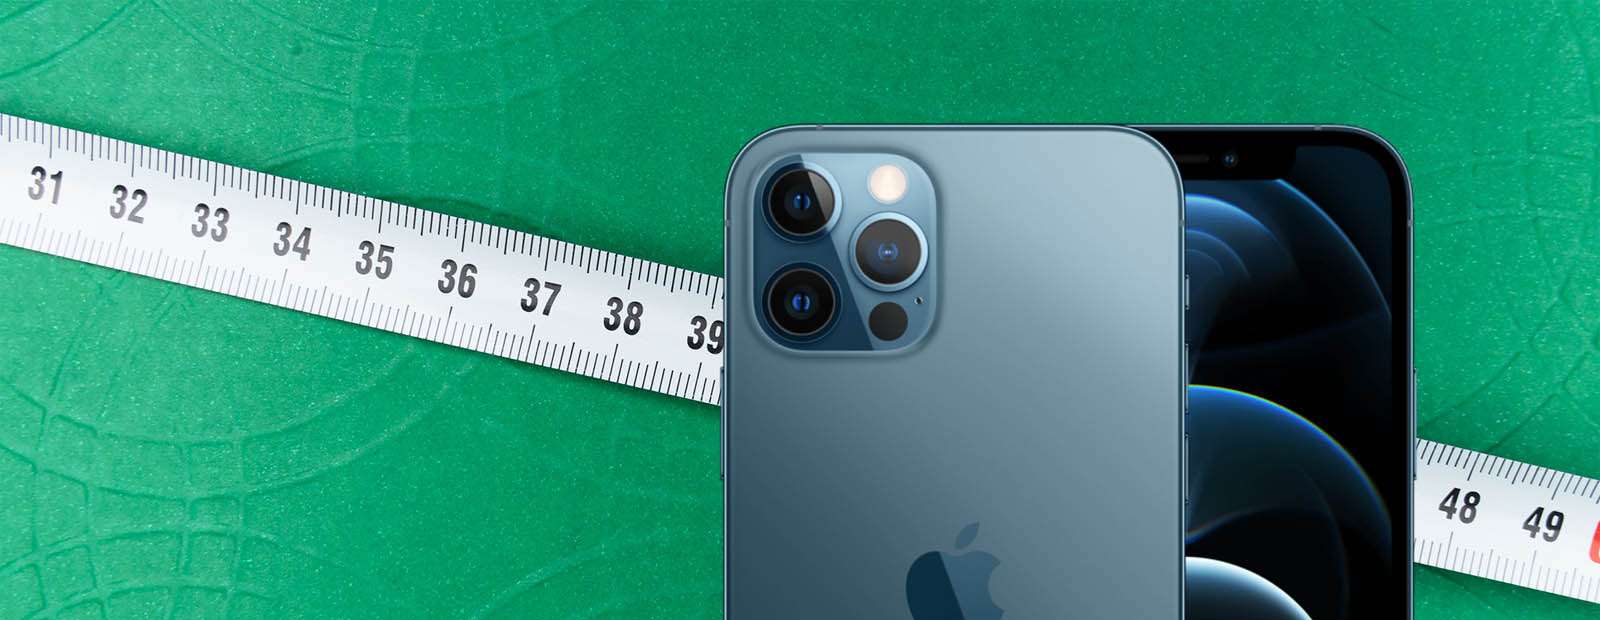 Як виміряти зріст за допомогою iPhone 12 Pro